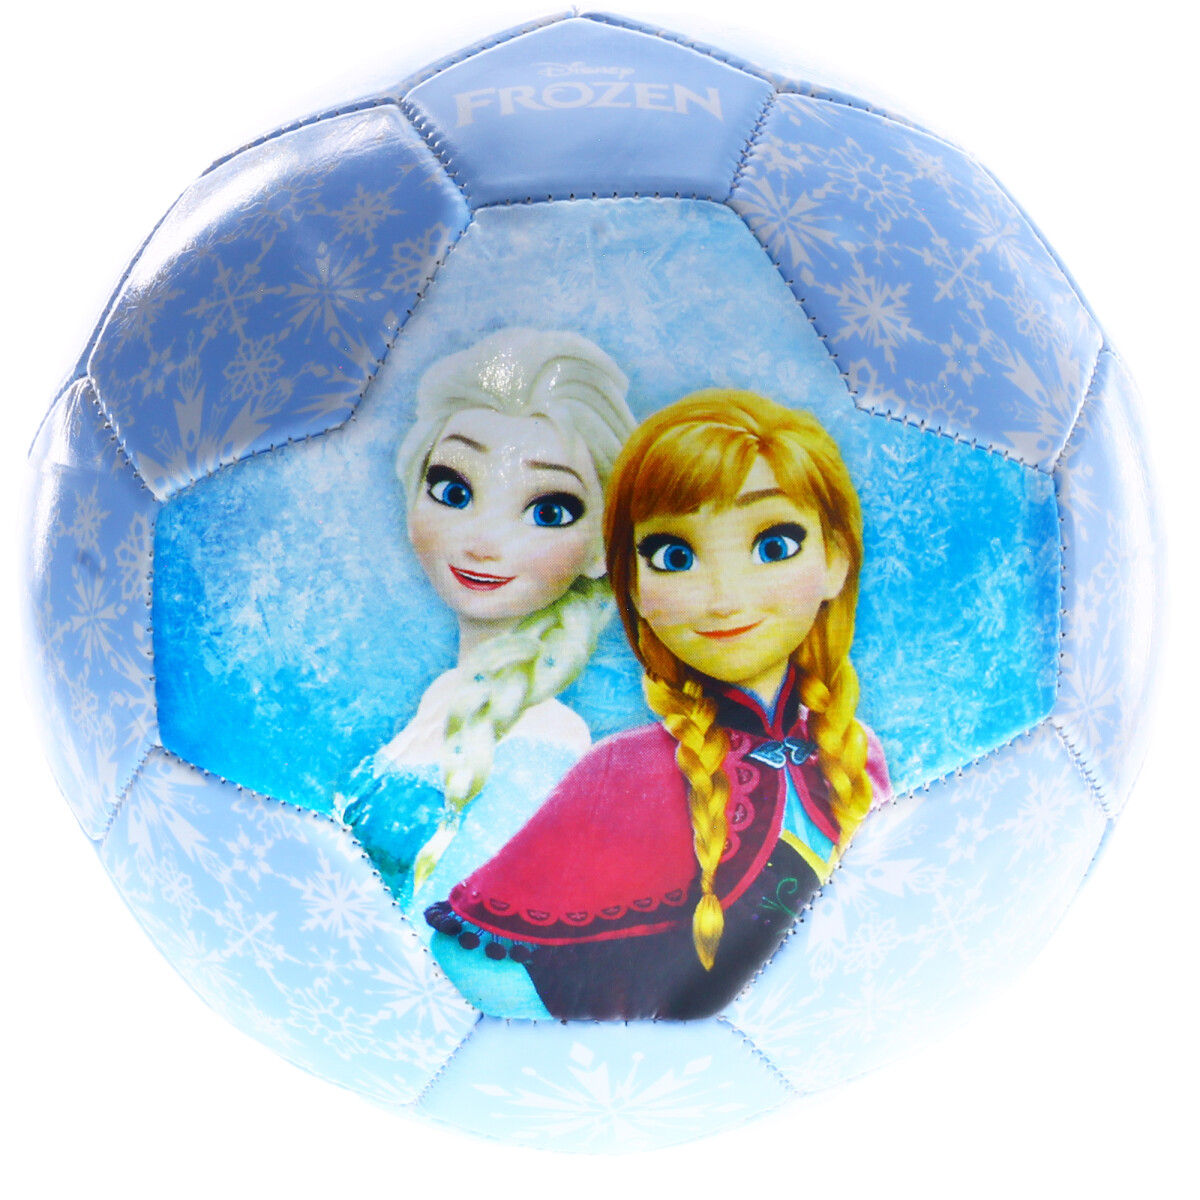 Pelota Frozen II Disney - Celeste/Blanco 